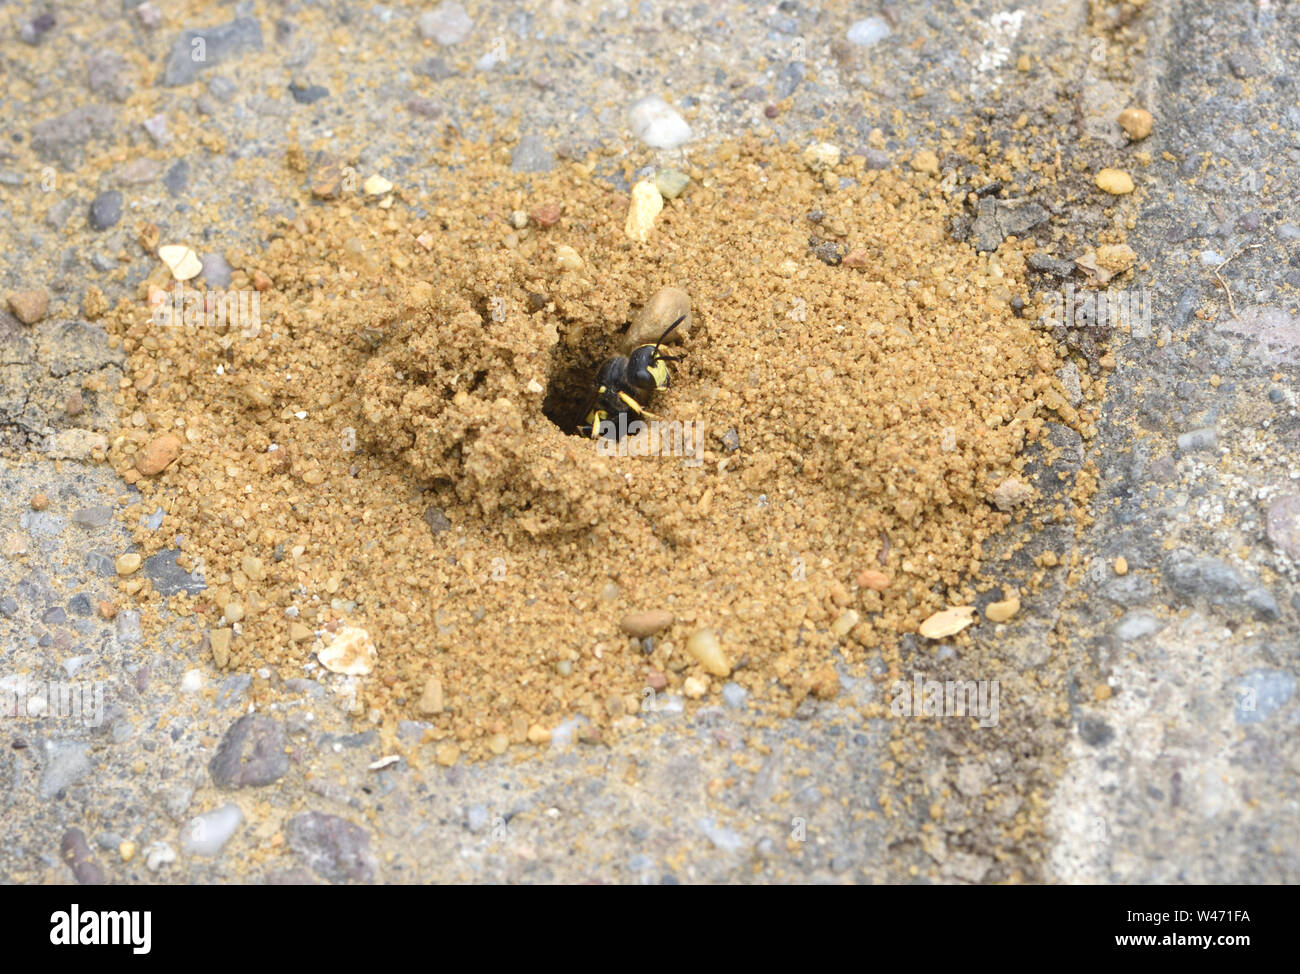 Eine reich verzierte tailed digger Wasp (Cerceris rybyensis) vorsichtig aus seiner Höhle in Bauherren' Sand zwischen Pflasterklinker. Es ist wahrscheinlich die Einstellung o Stockfoto